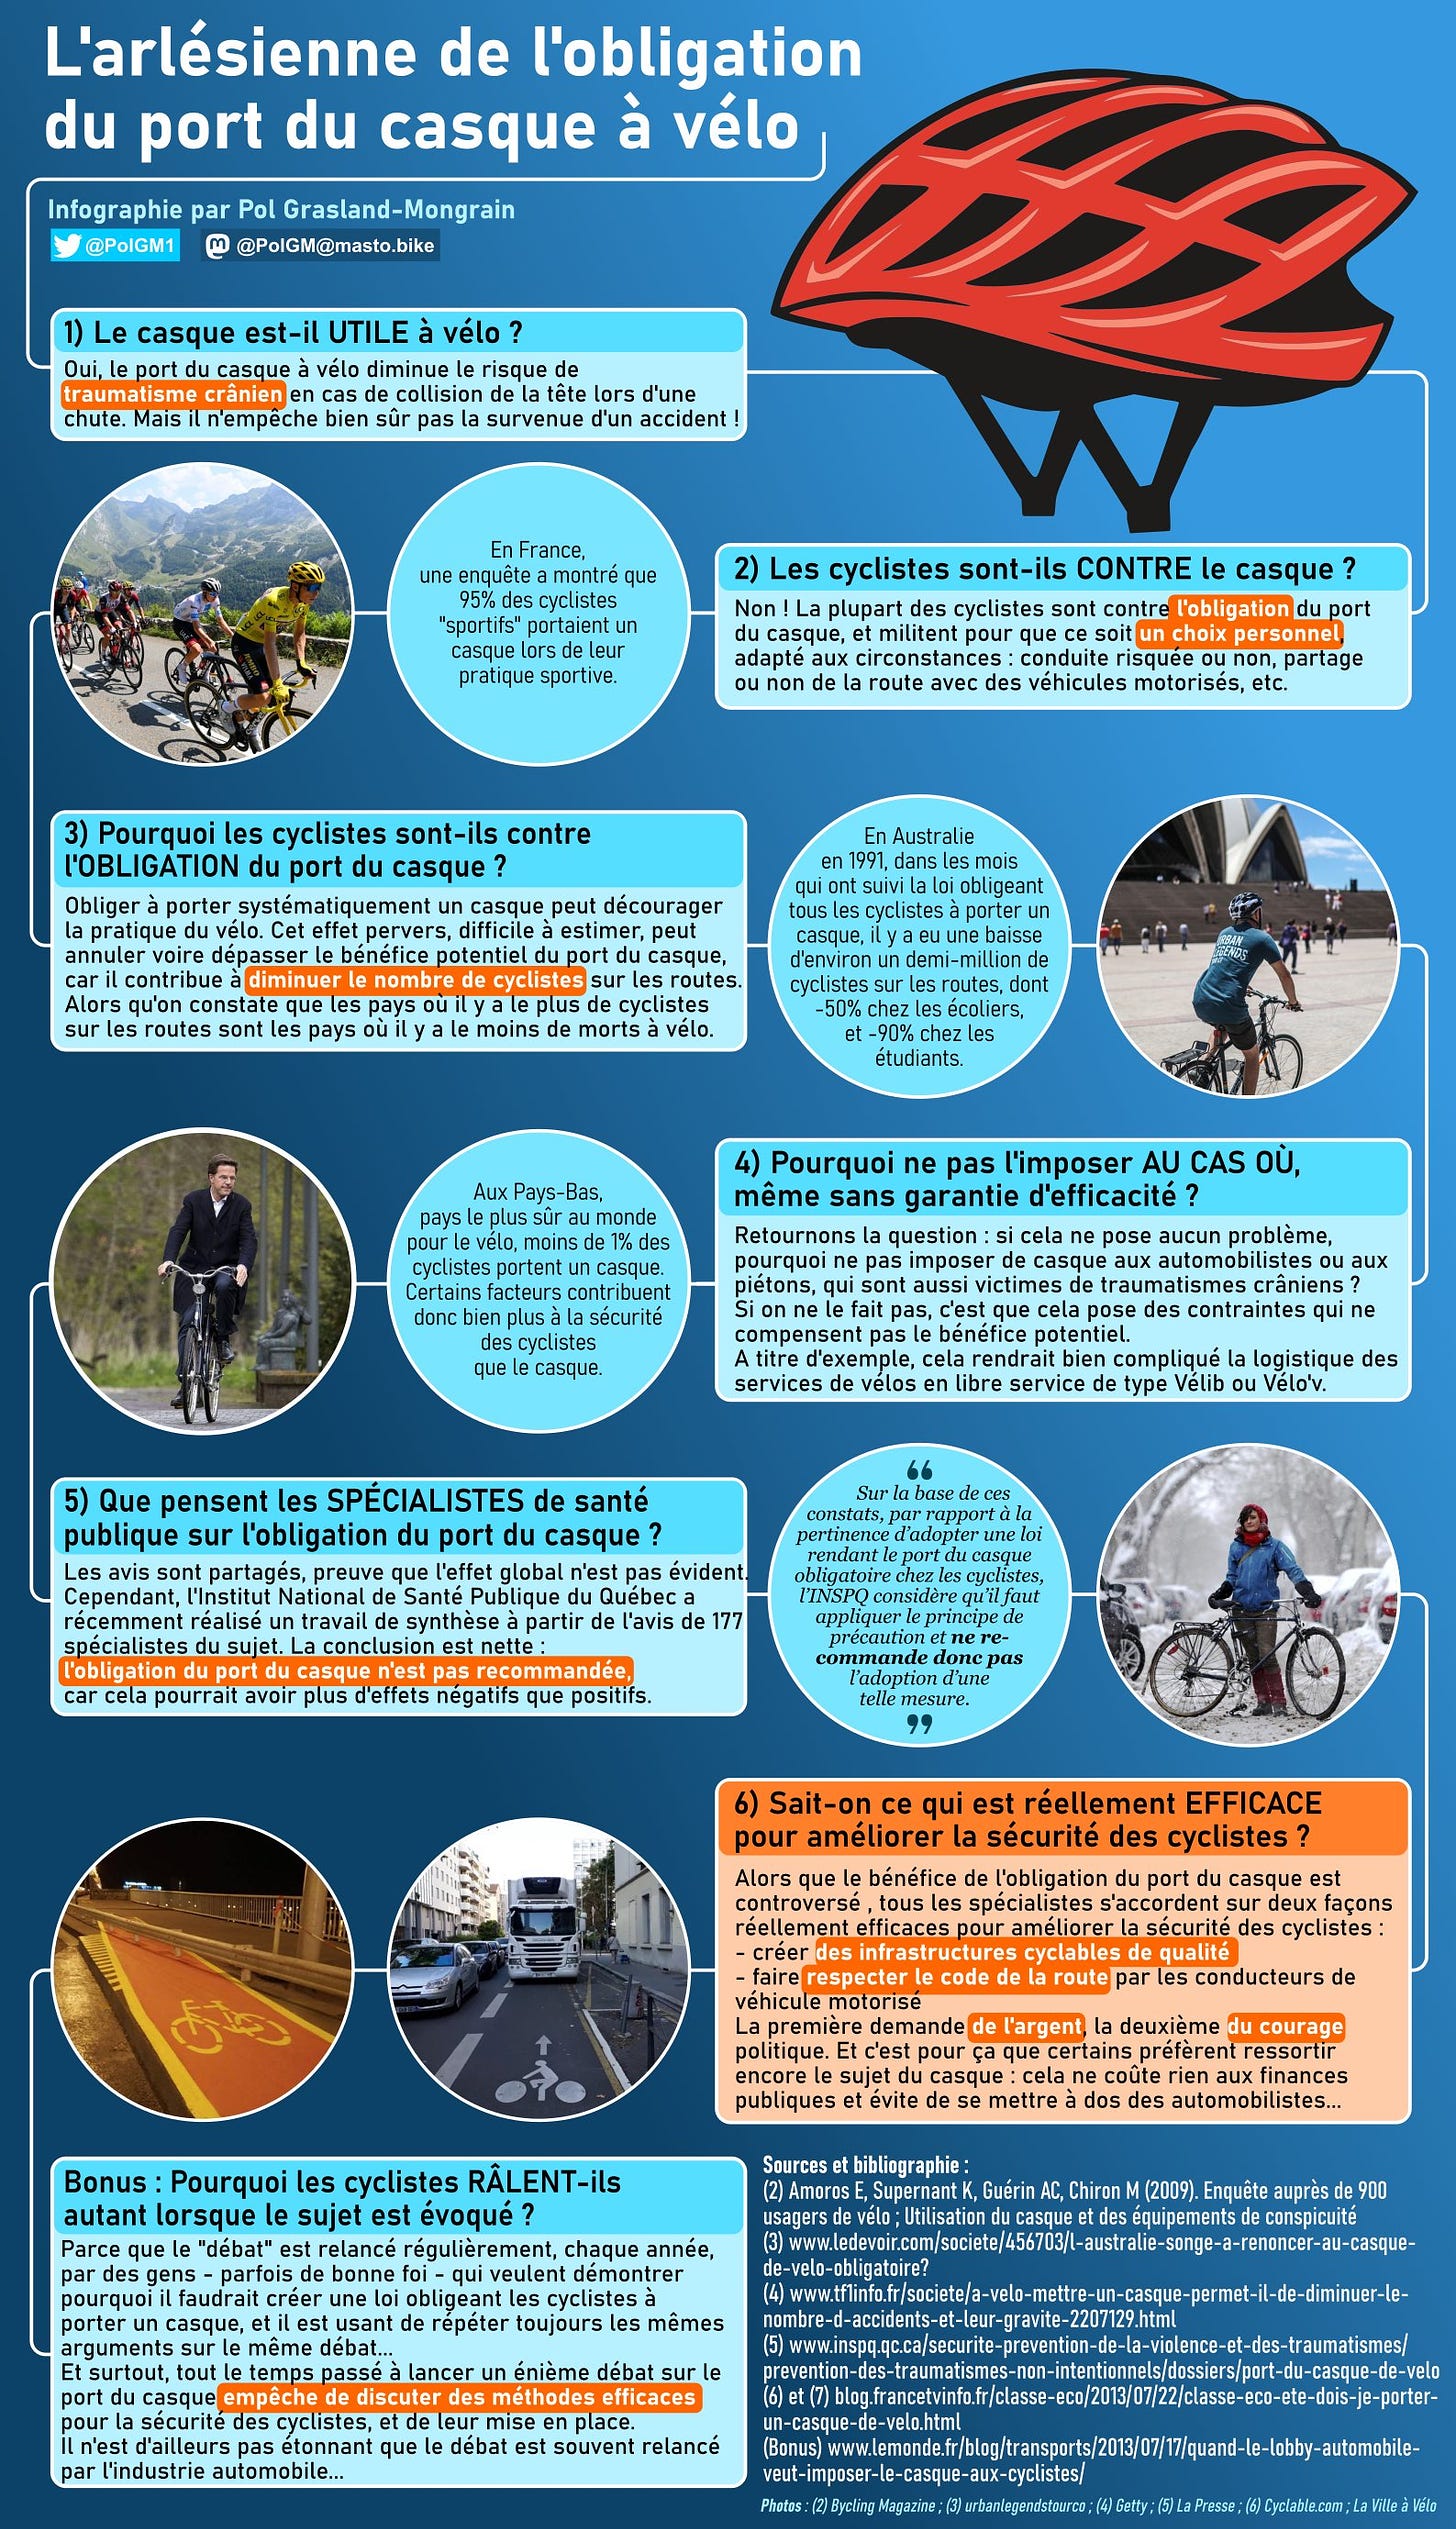 Infographie : l'arlésienne de l'obligation du port du casque à vélo